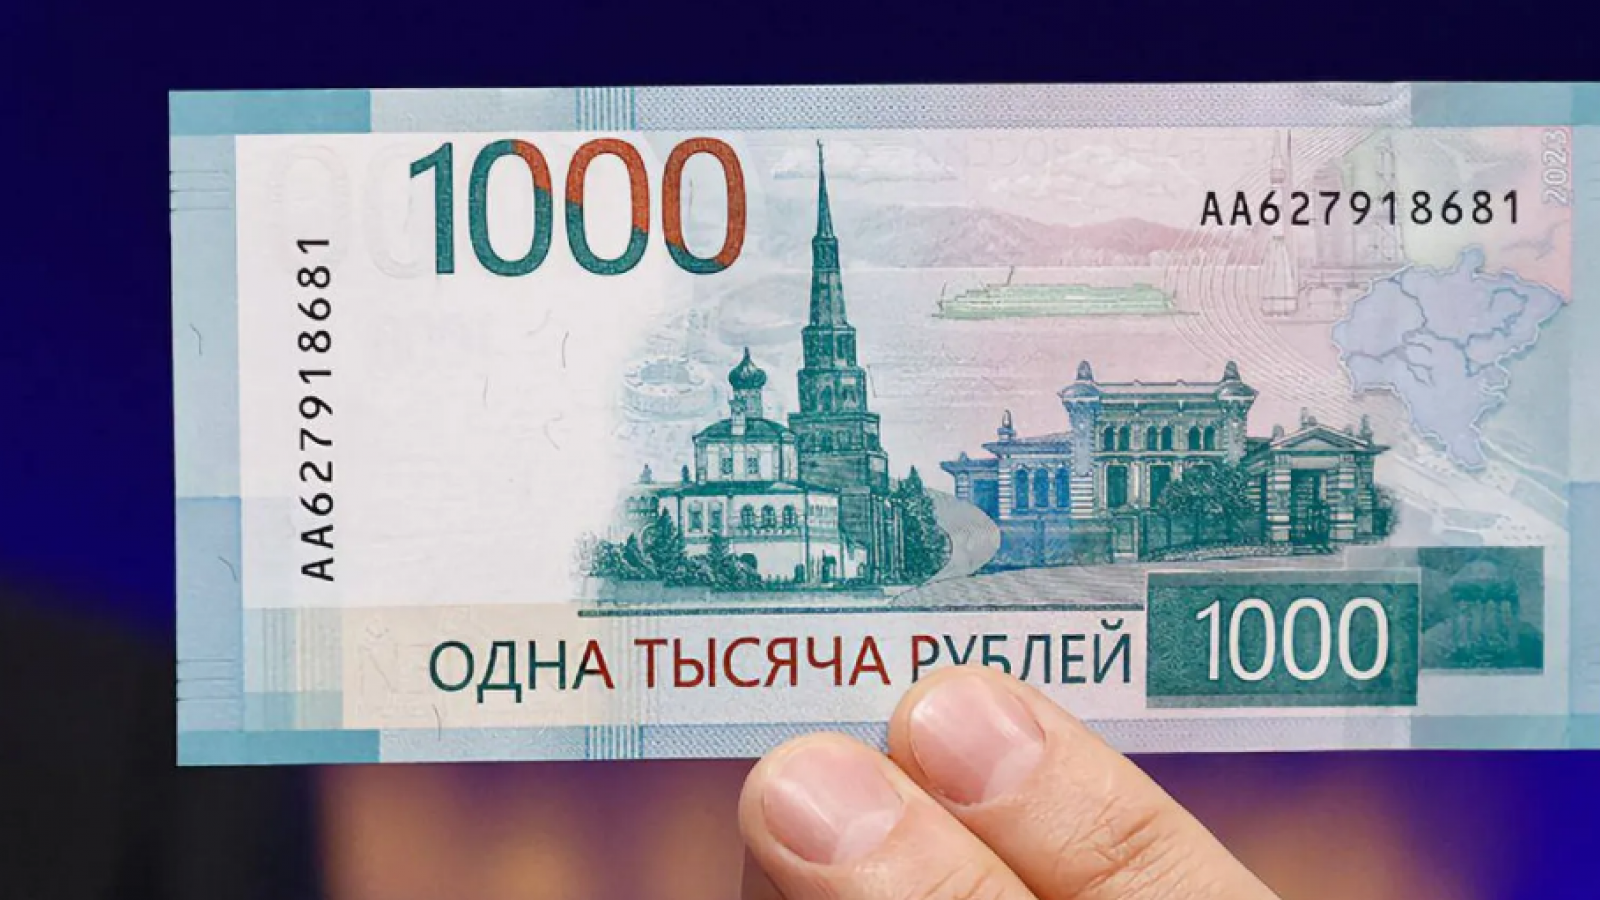 ЦБ приостановил выпуск новой банкноты в 1000 руб.